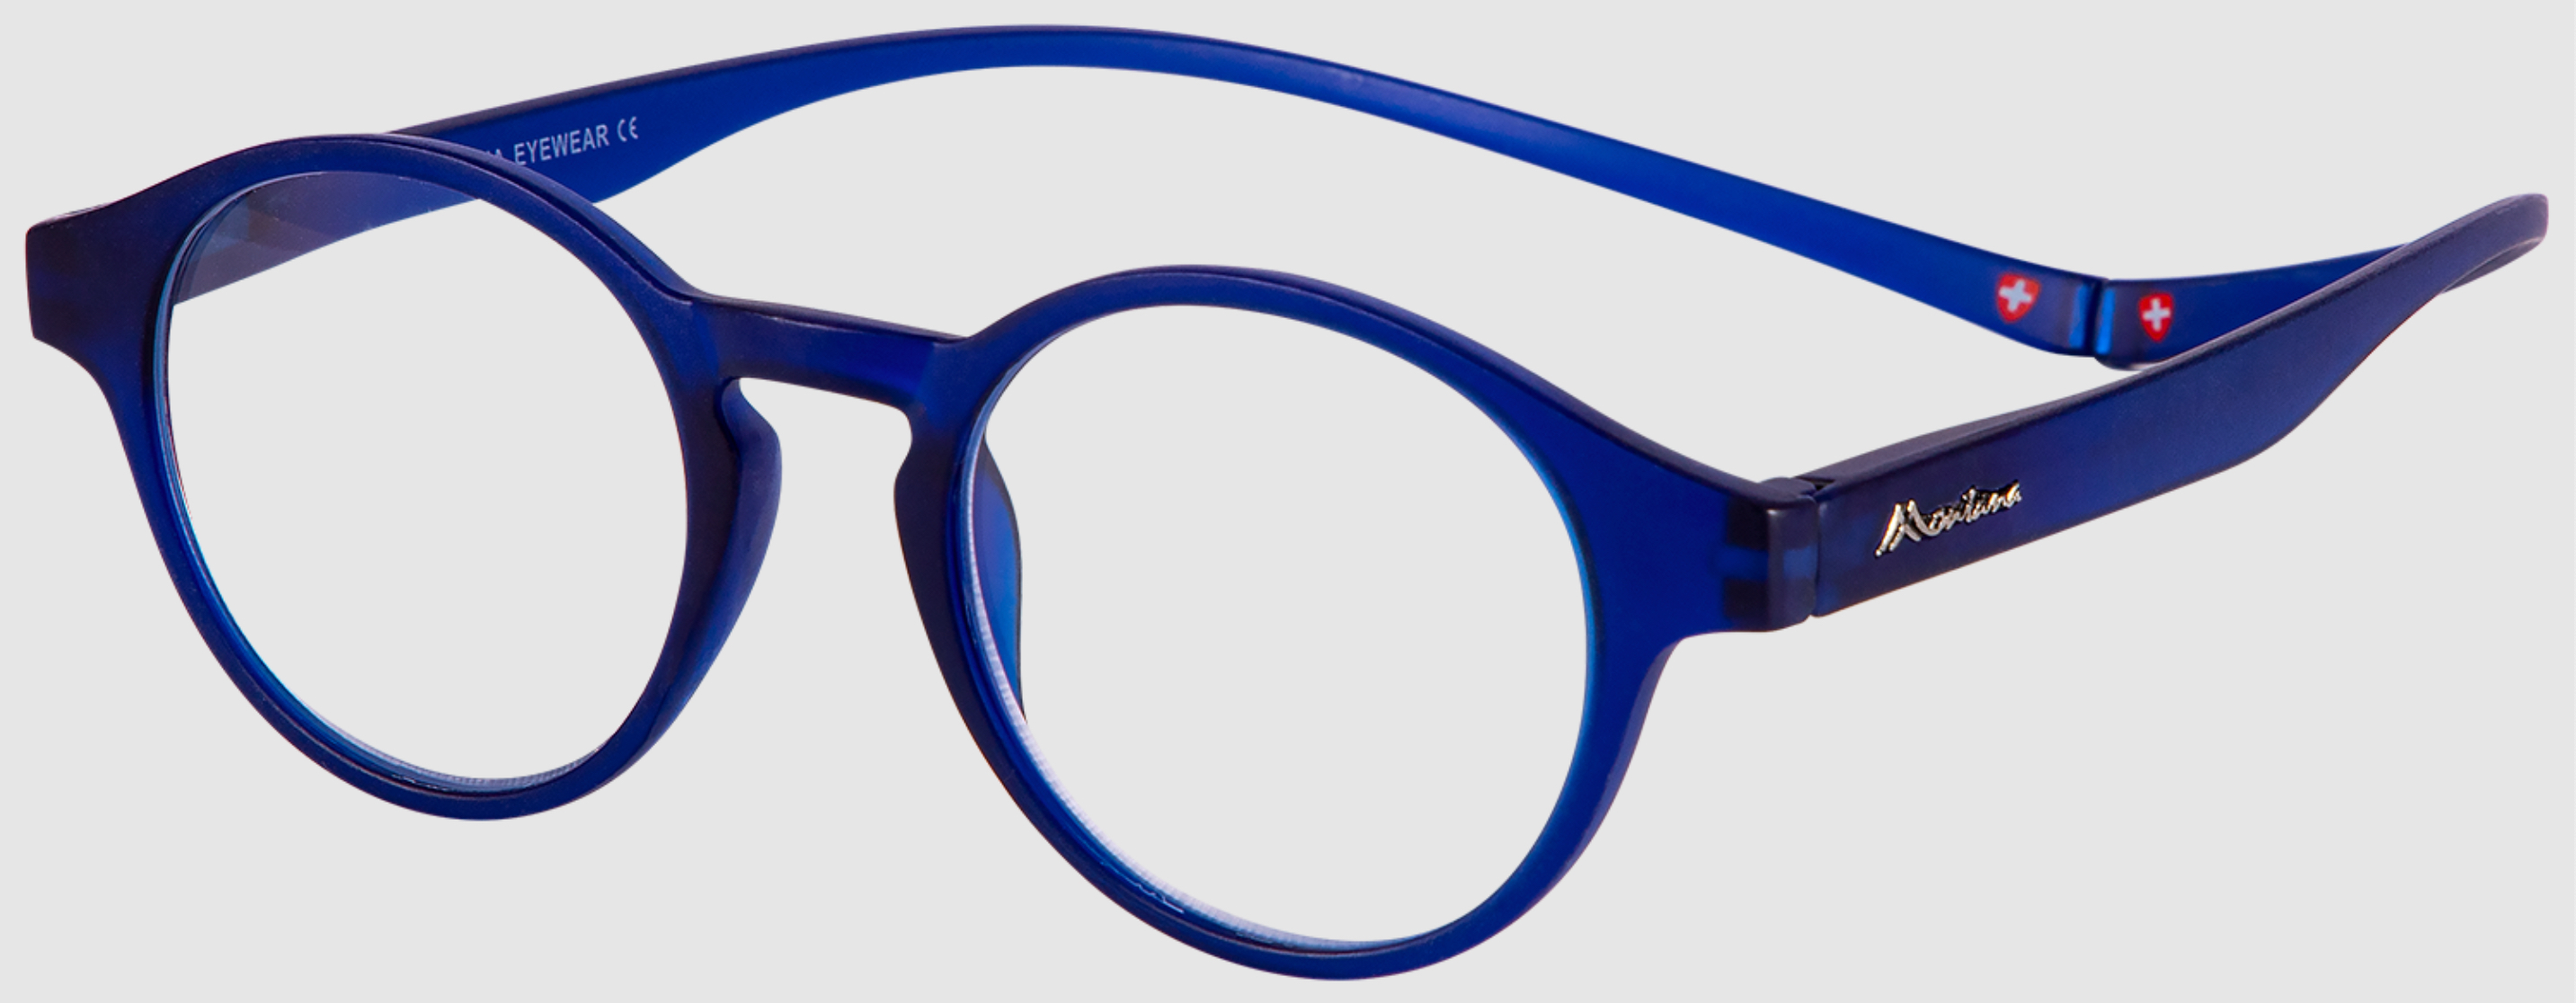 Magnetic reading glasses MR60B 